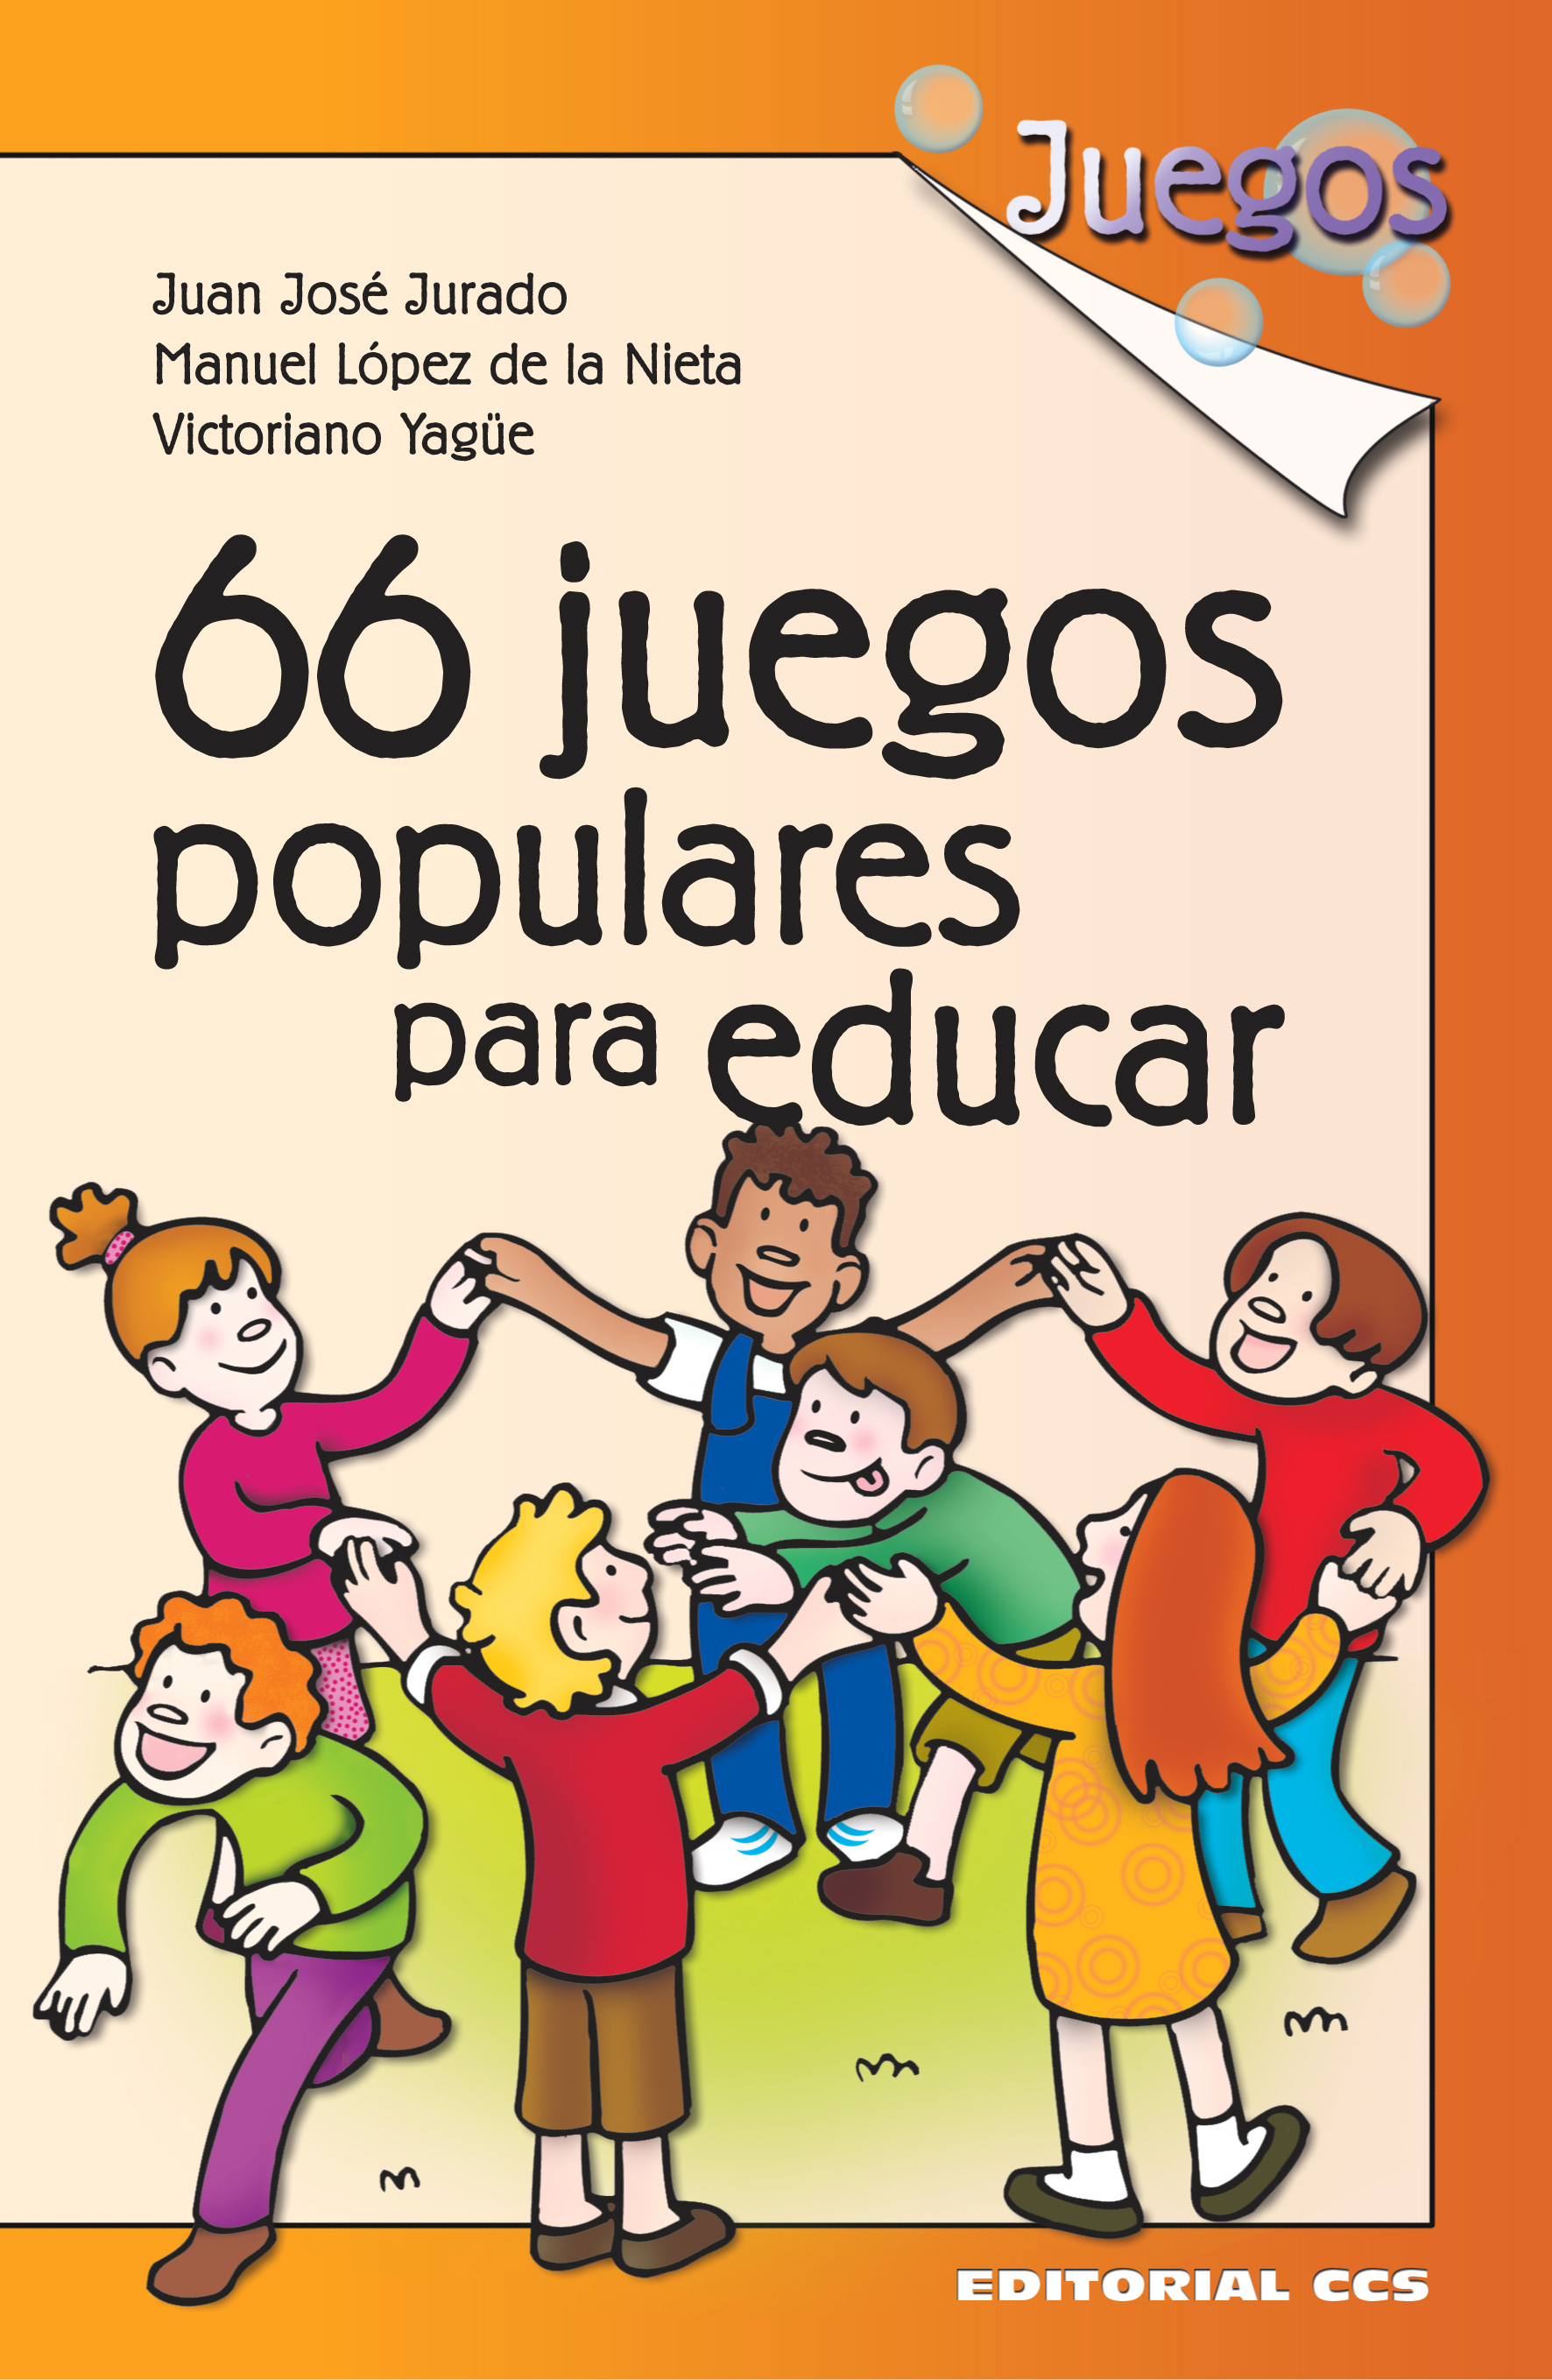 Editorial CCS - Libro: 66 JUEGOS POPULARES PARA EDUCAR